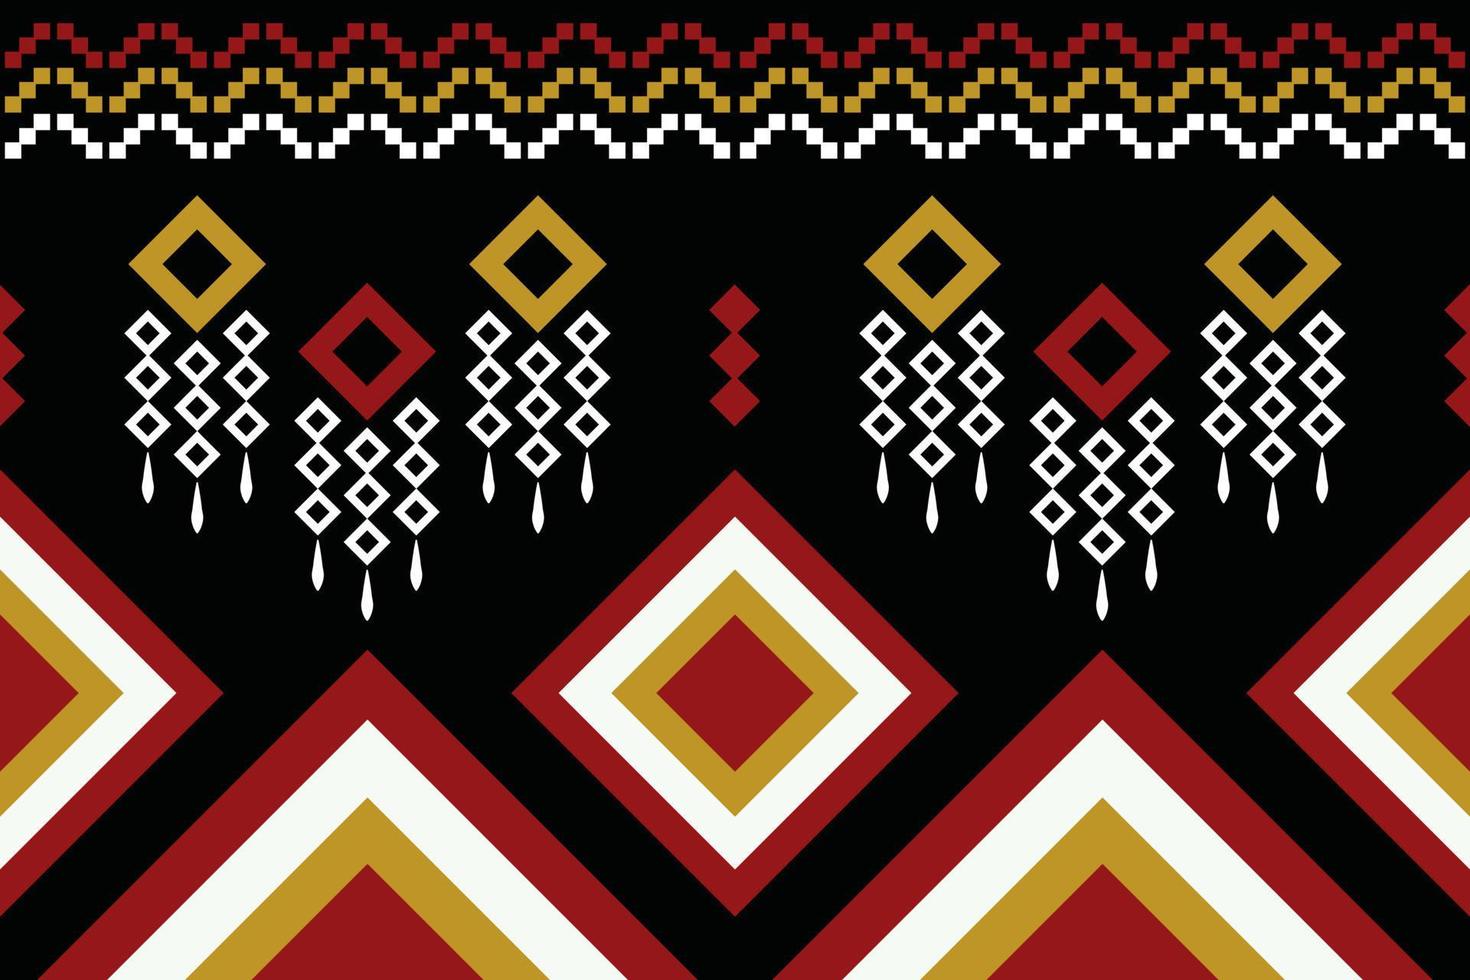 etnisch kleding stof patroon meetkundig stijl. sarong aztec etnisch oosters patroon traditioneel donker zwart achtergrond. abstract,vector,illustratie. gebruik voor textuur,kleding,verpakking,decoratie,tapijt. vector